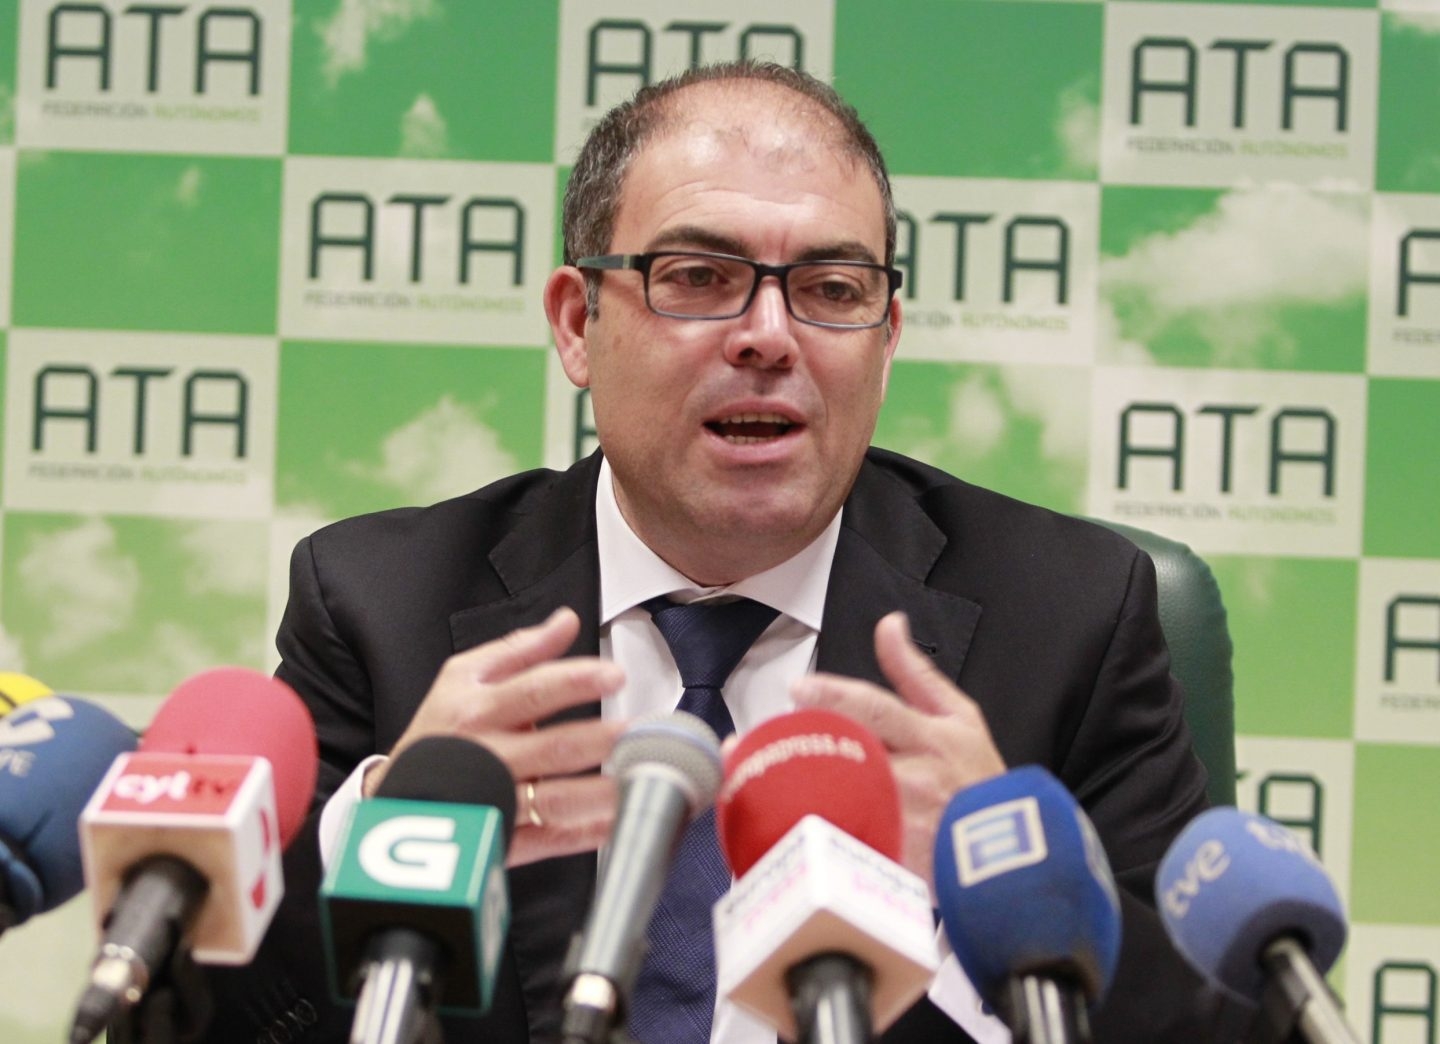 El presidente de la Federación Nacional de Asociaciones de Trabajadores Autónomos (ATA), Lorenzo Amor.